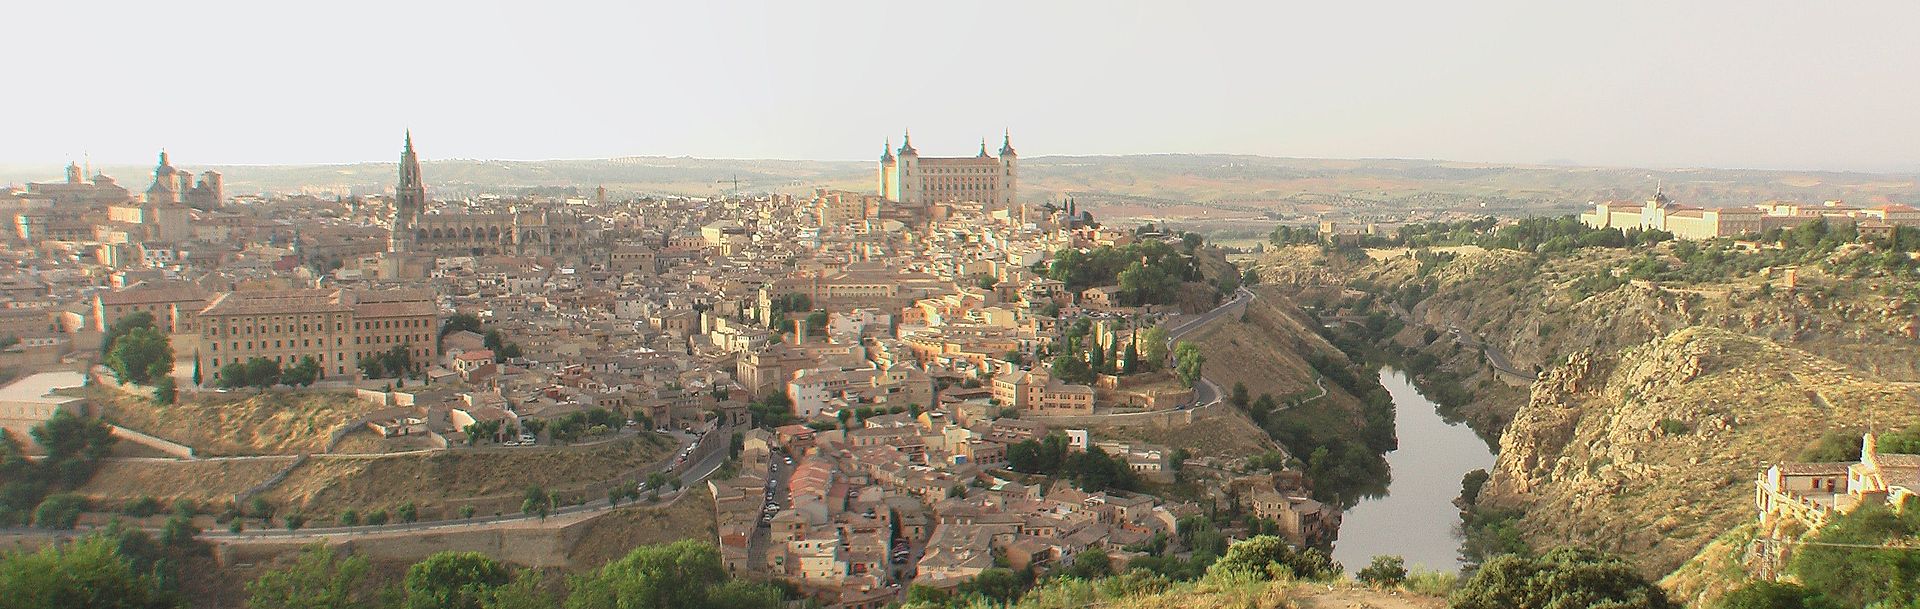 Visite Guidate Spagna: Toledo